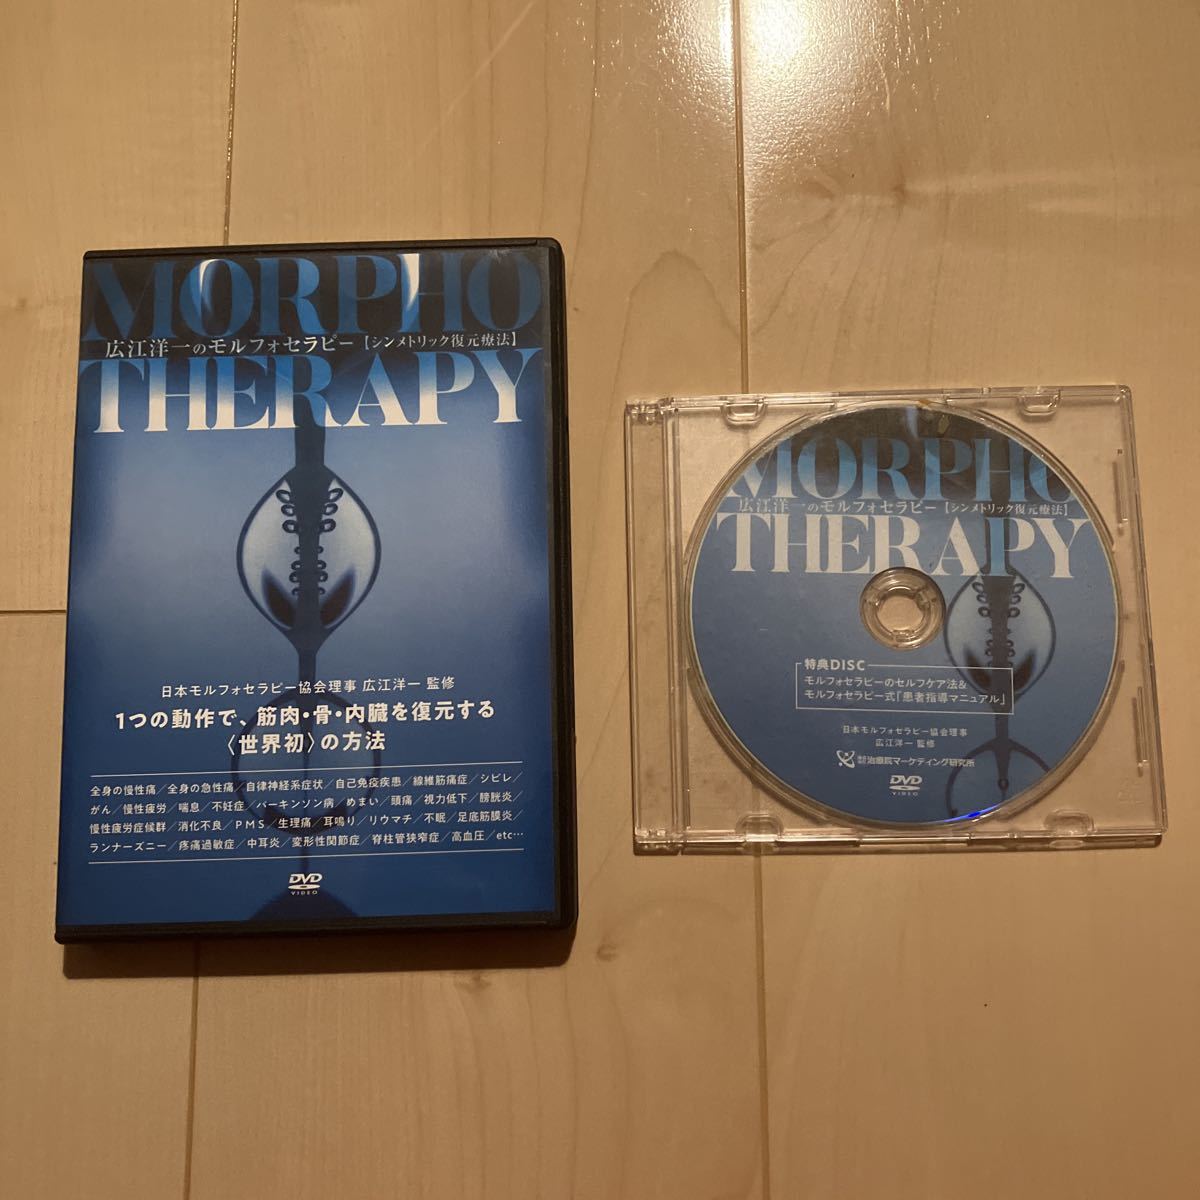 広江洋一のモルフォセラピー Morpho Therapy DVD-